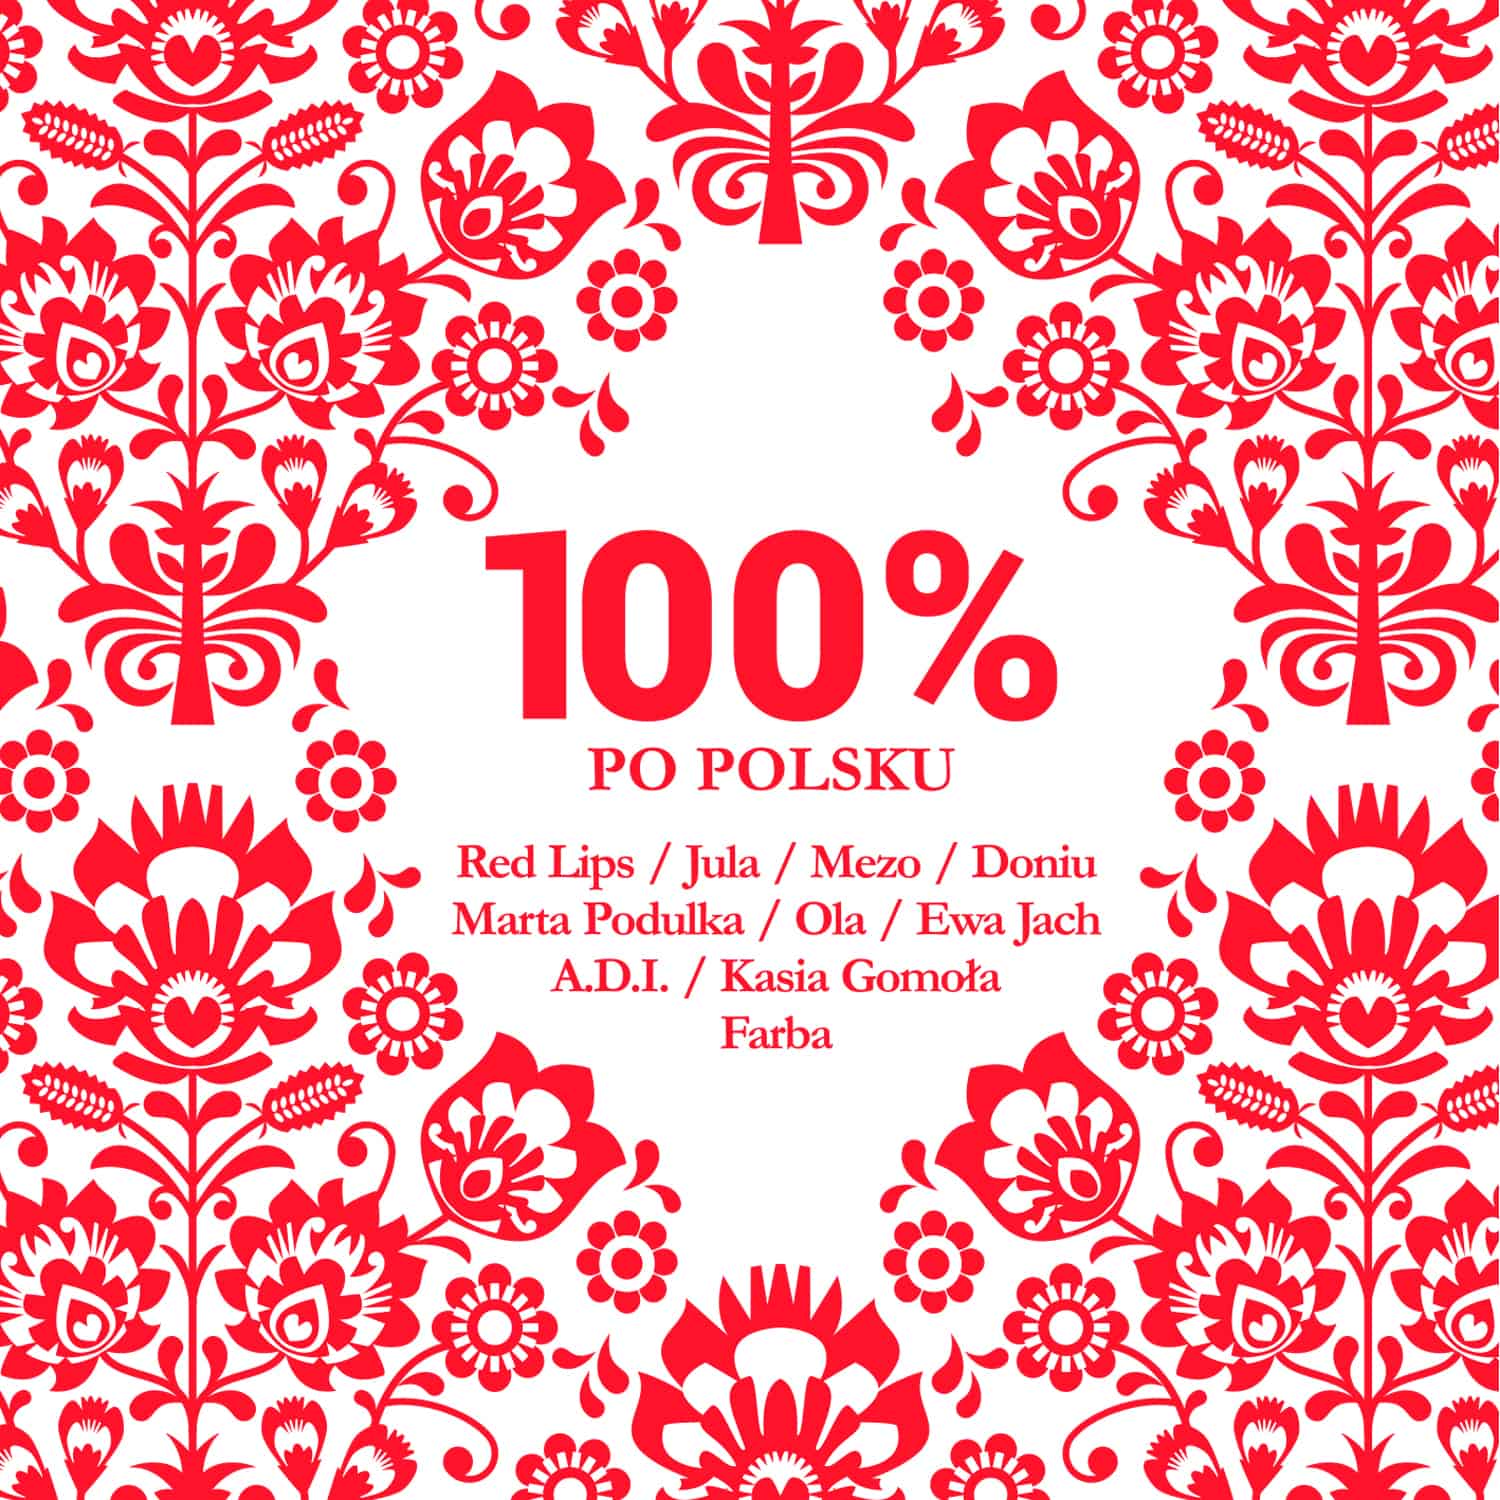 Kompilacja 100% Po Polsku: Premiera już 8 października